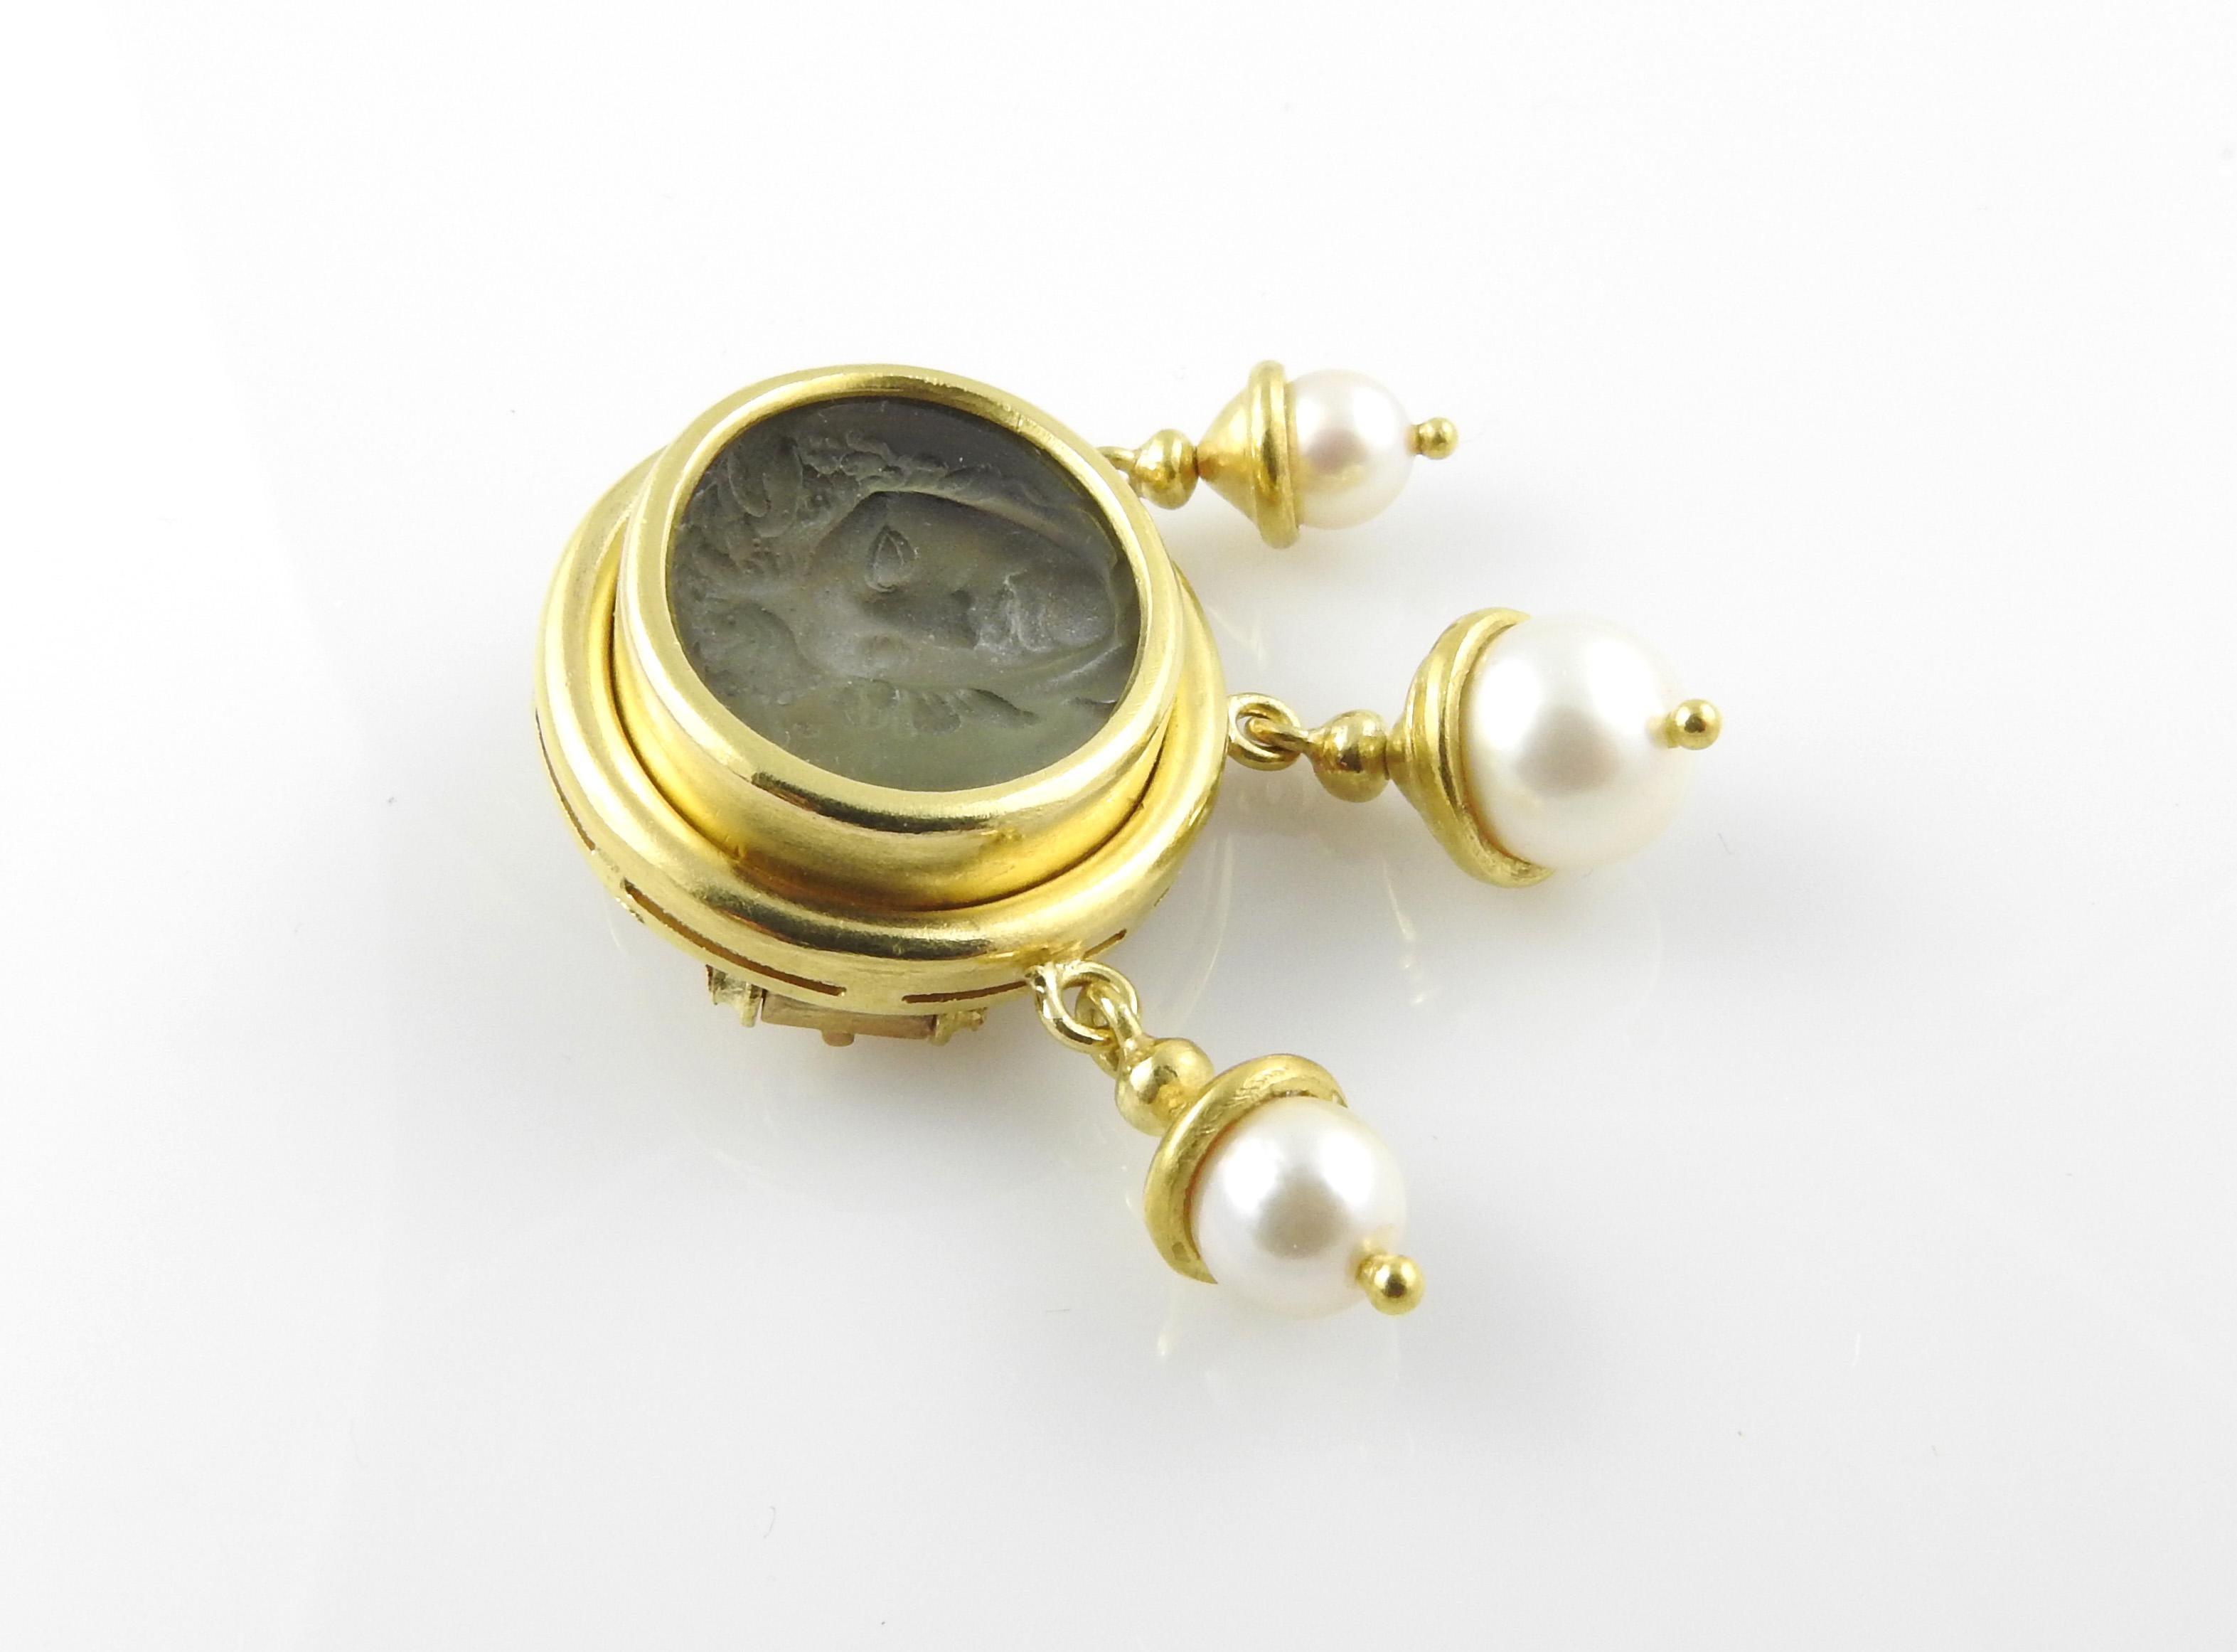 Bead Elizabeth Locke 18 Karat Gold Venetian Glass Pearl Intaglio Brooch Pendant